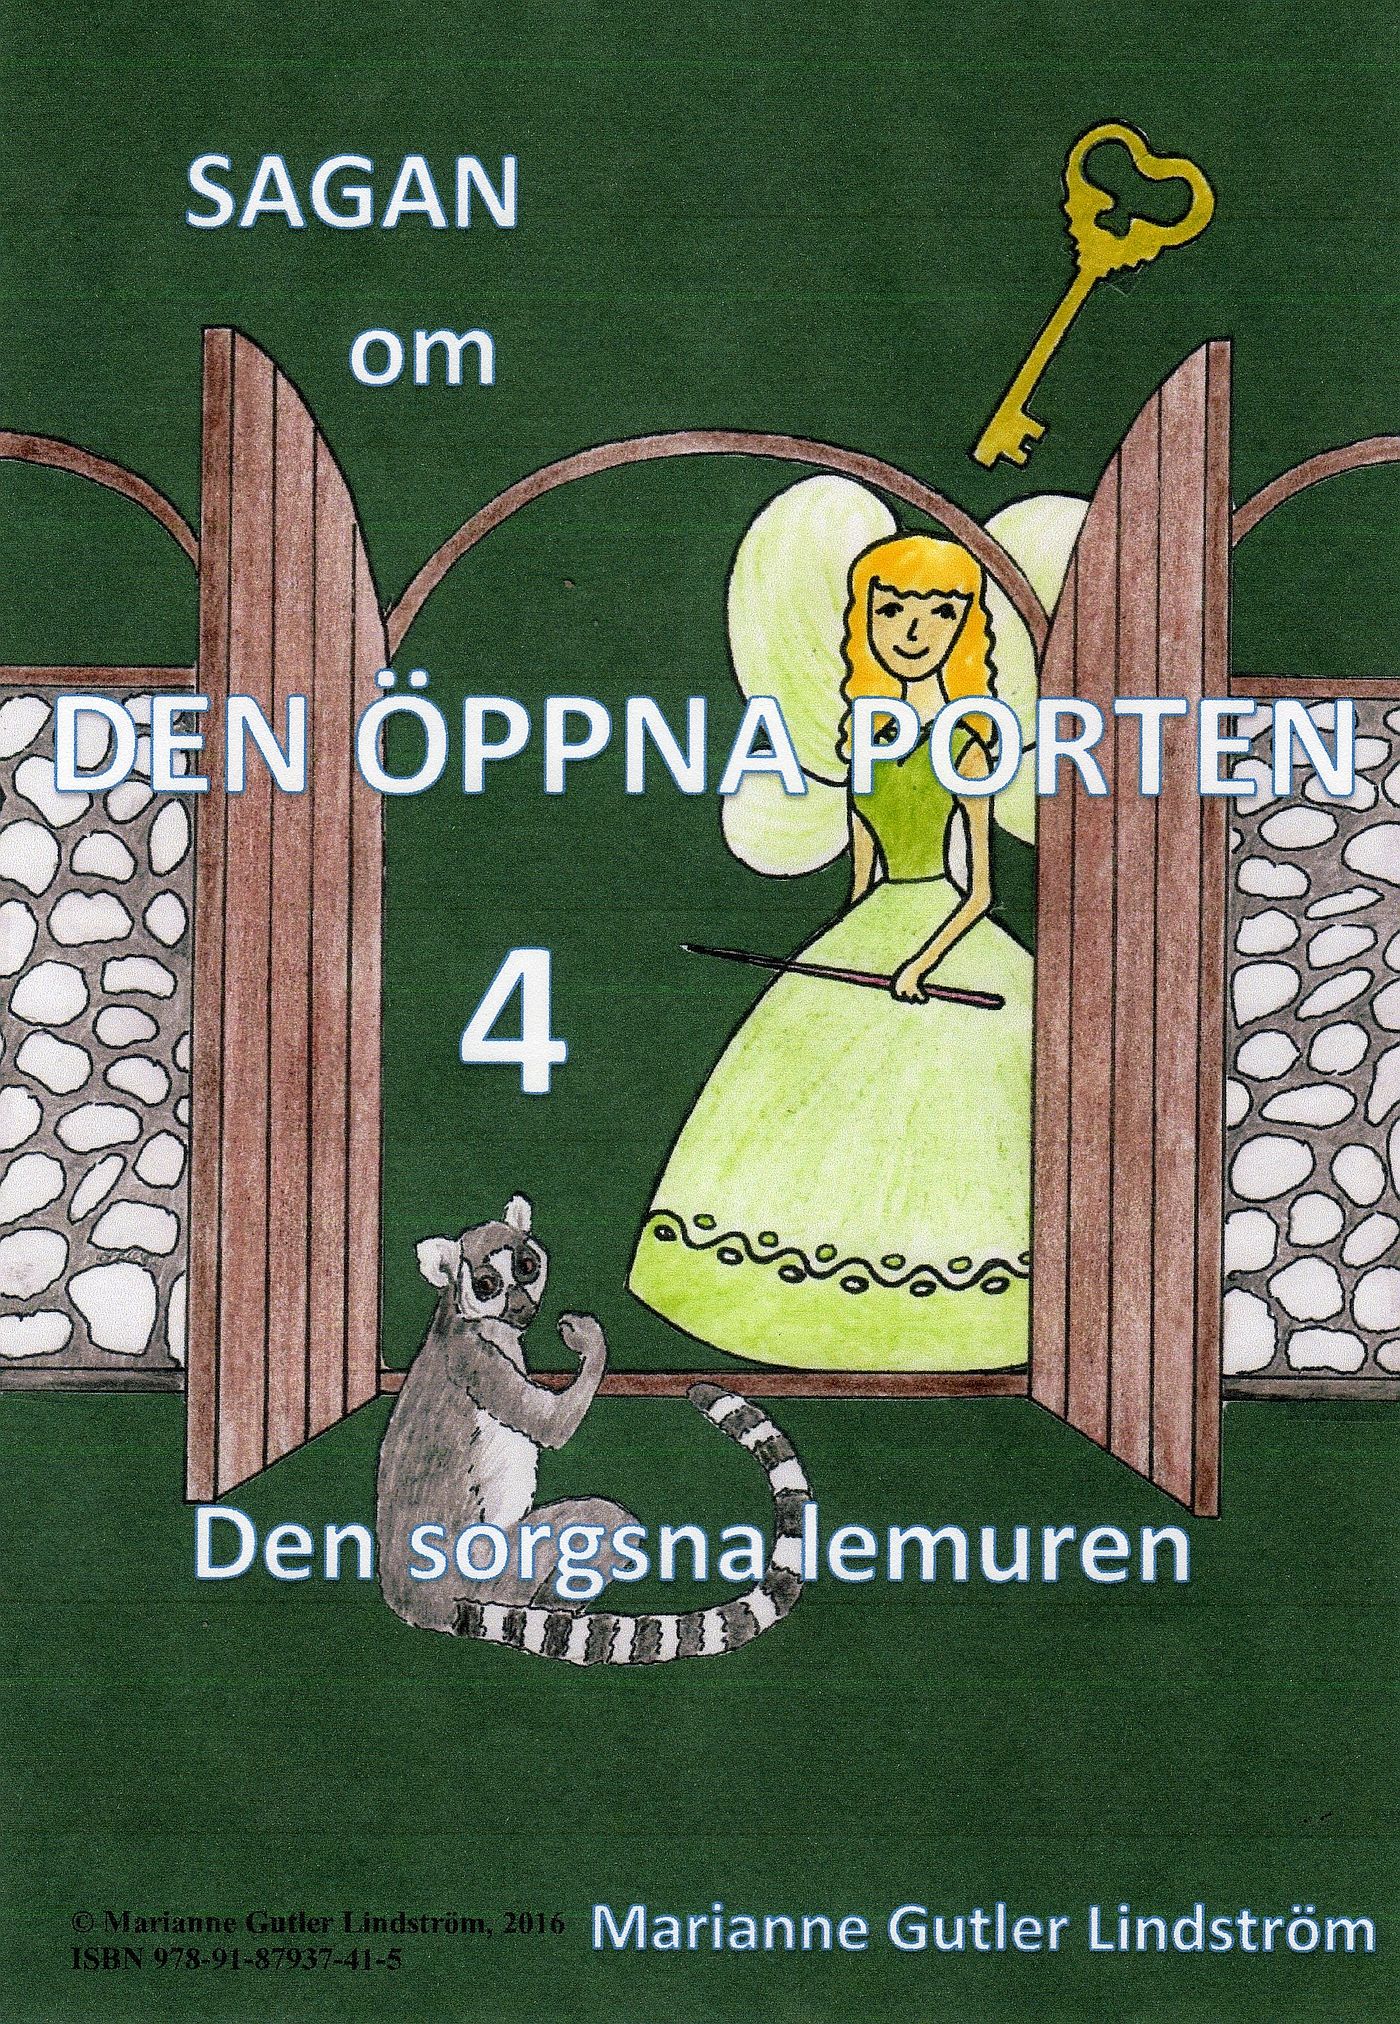 Sagan om den öppna porten 4. Den sorgsna lemuren, e-bok av Marianne Gutler Lindström